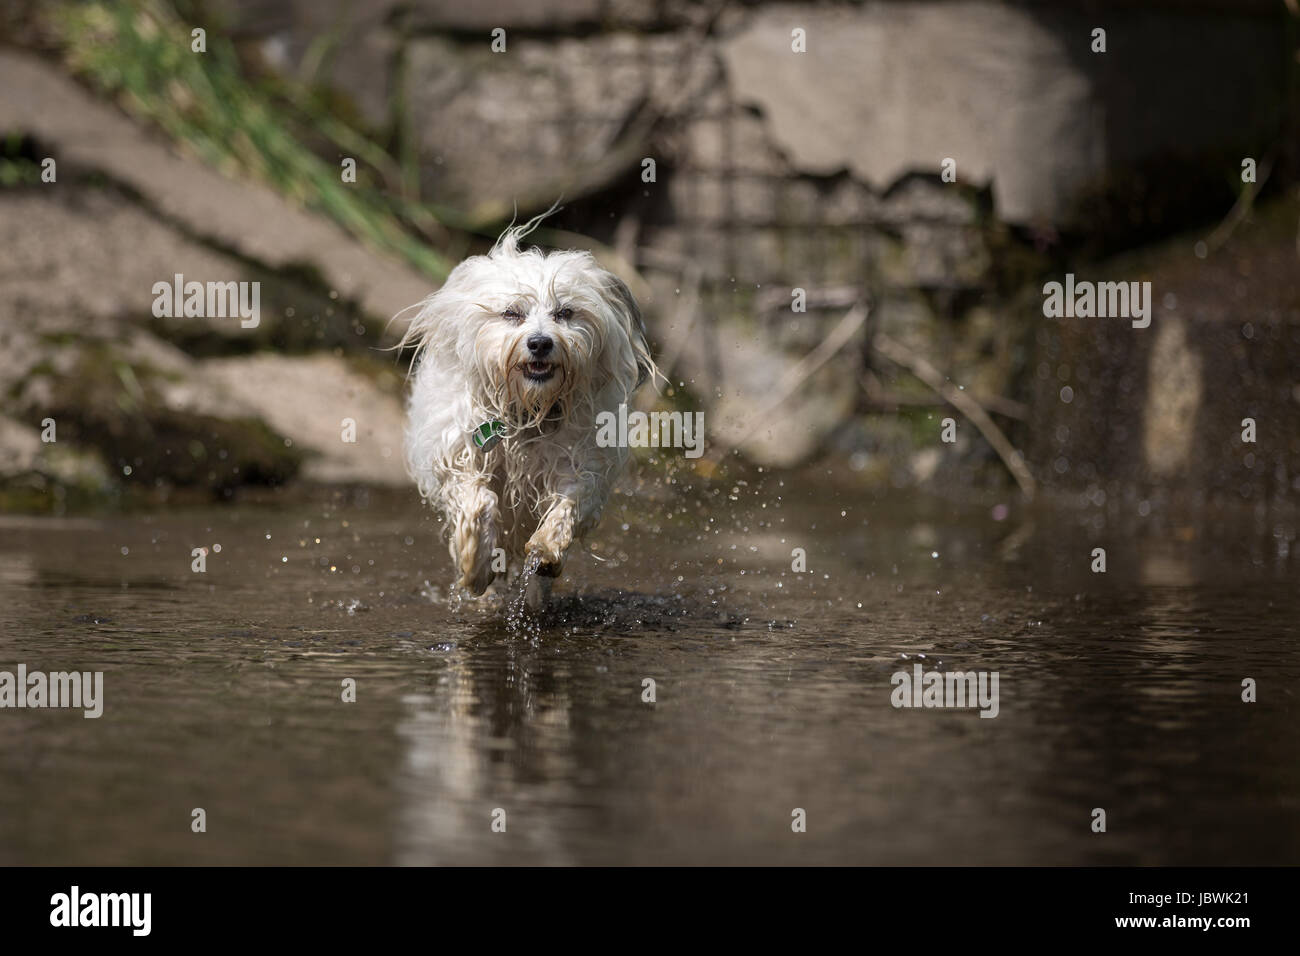 Ein kleiner weißer Havaneser rennt ganz schnell durch das Wasser, während der Aufnahme sind seine Pfoten über der Wasseroberfläche. Das Wasser spritzt dabei Links und Rechts vom Hund. Foto Stock